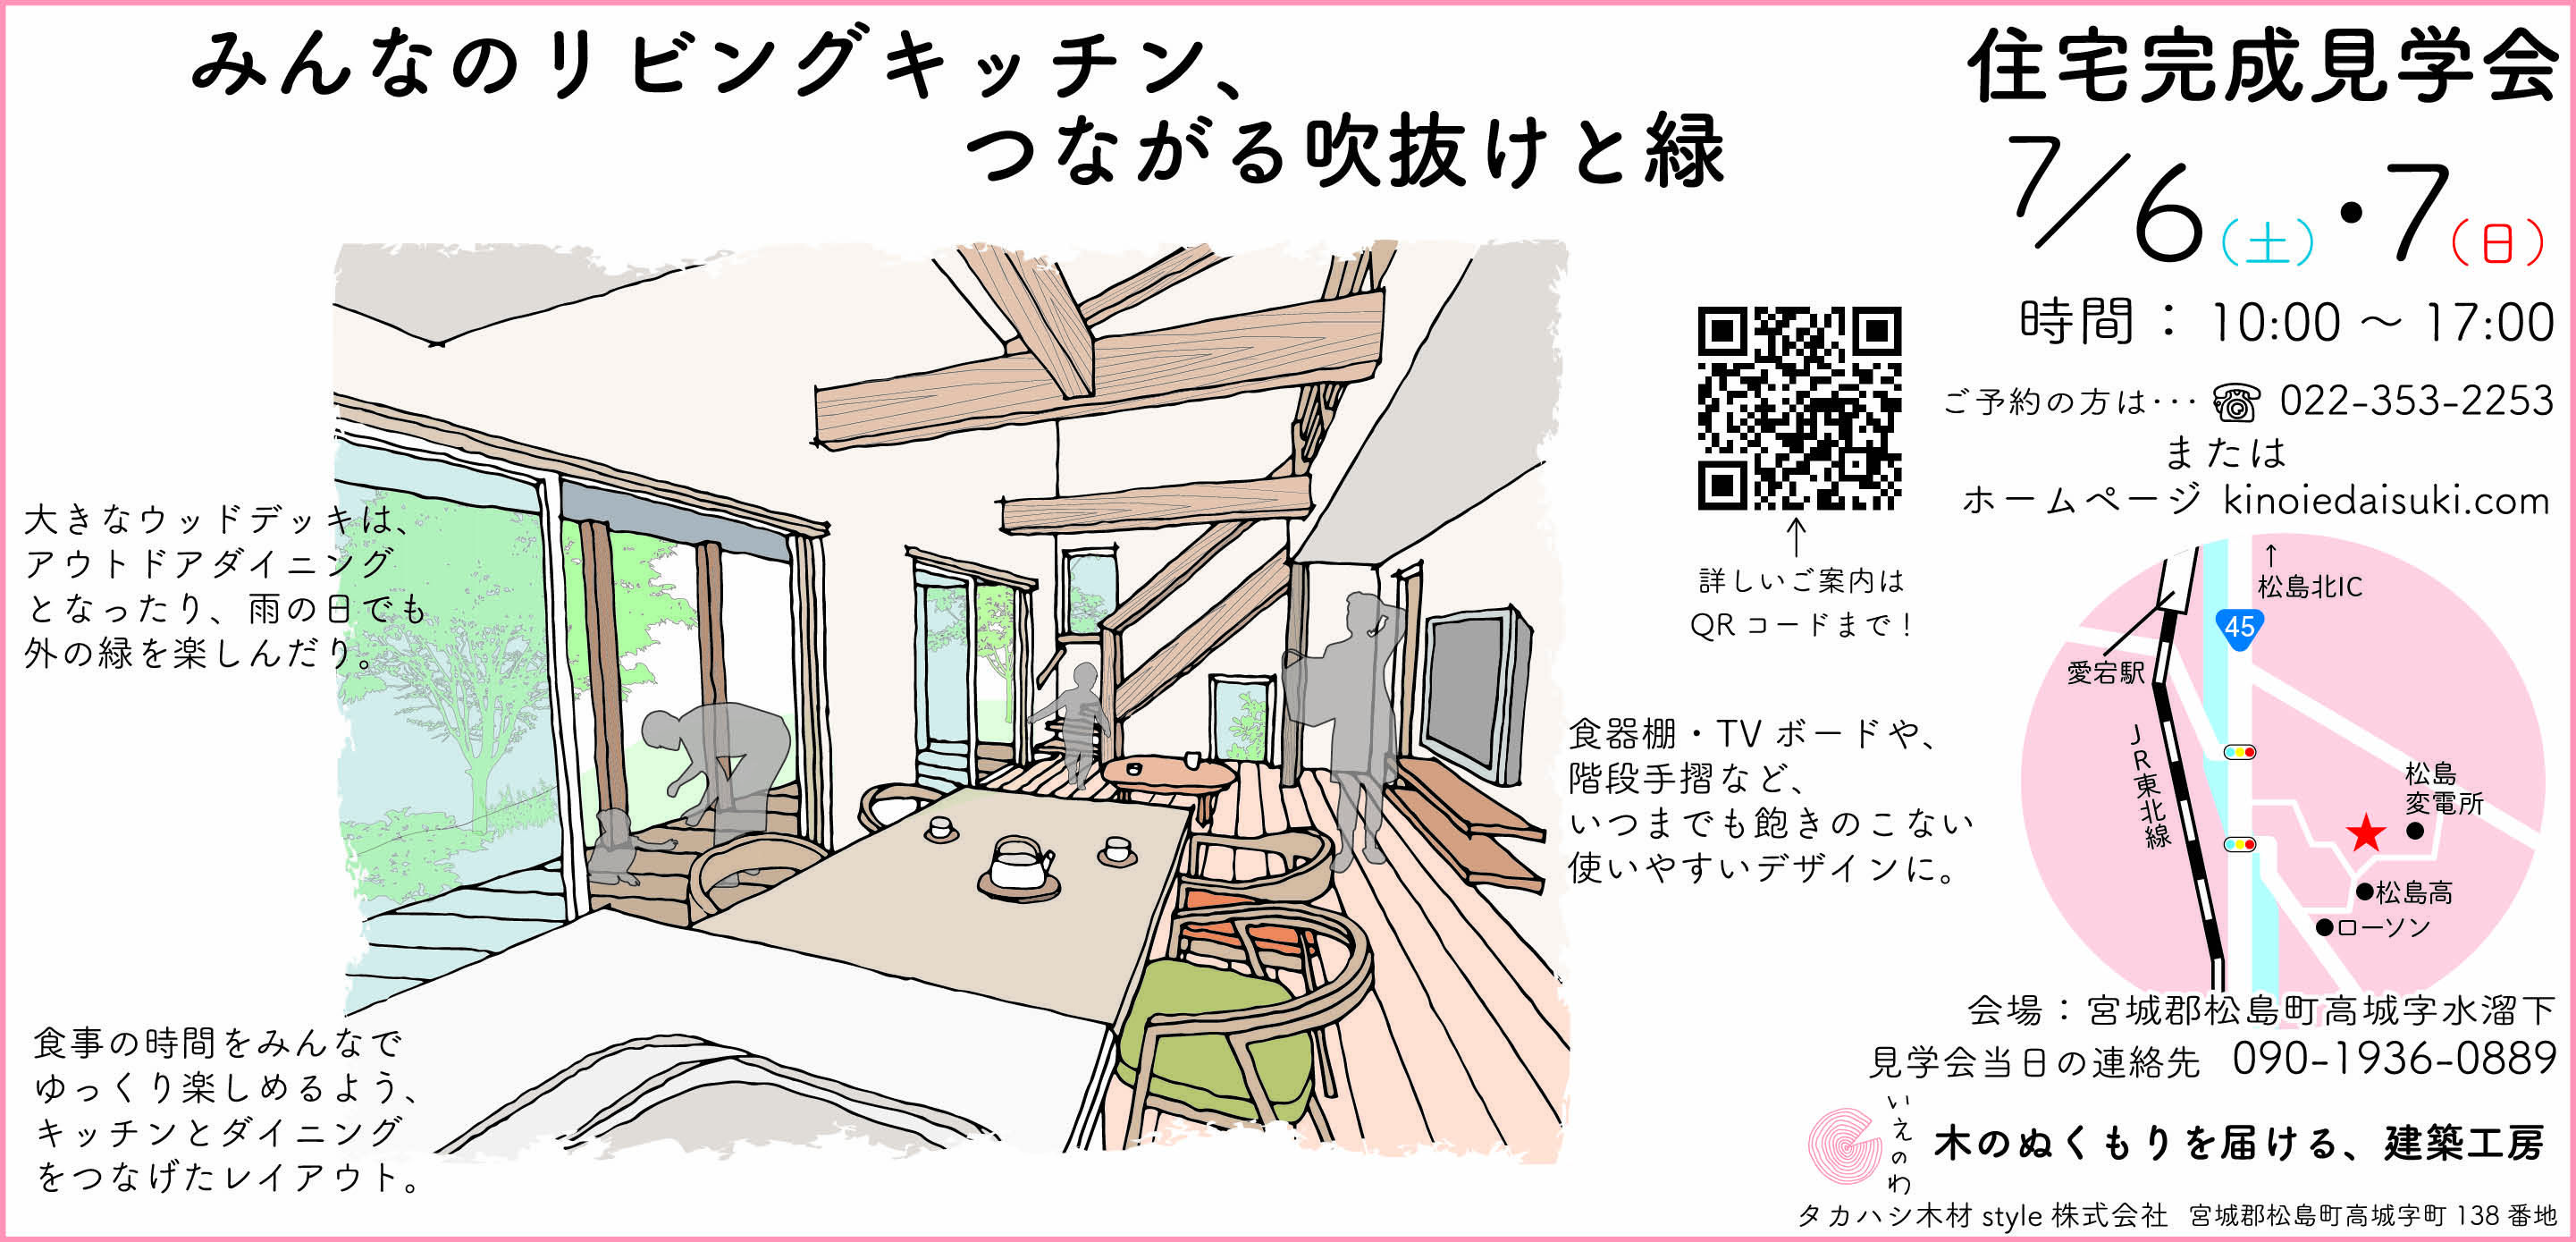 松島で土地探しの方向けの土地と建物完成見学会開催します (2)